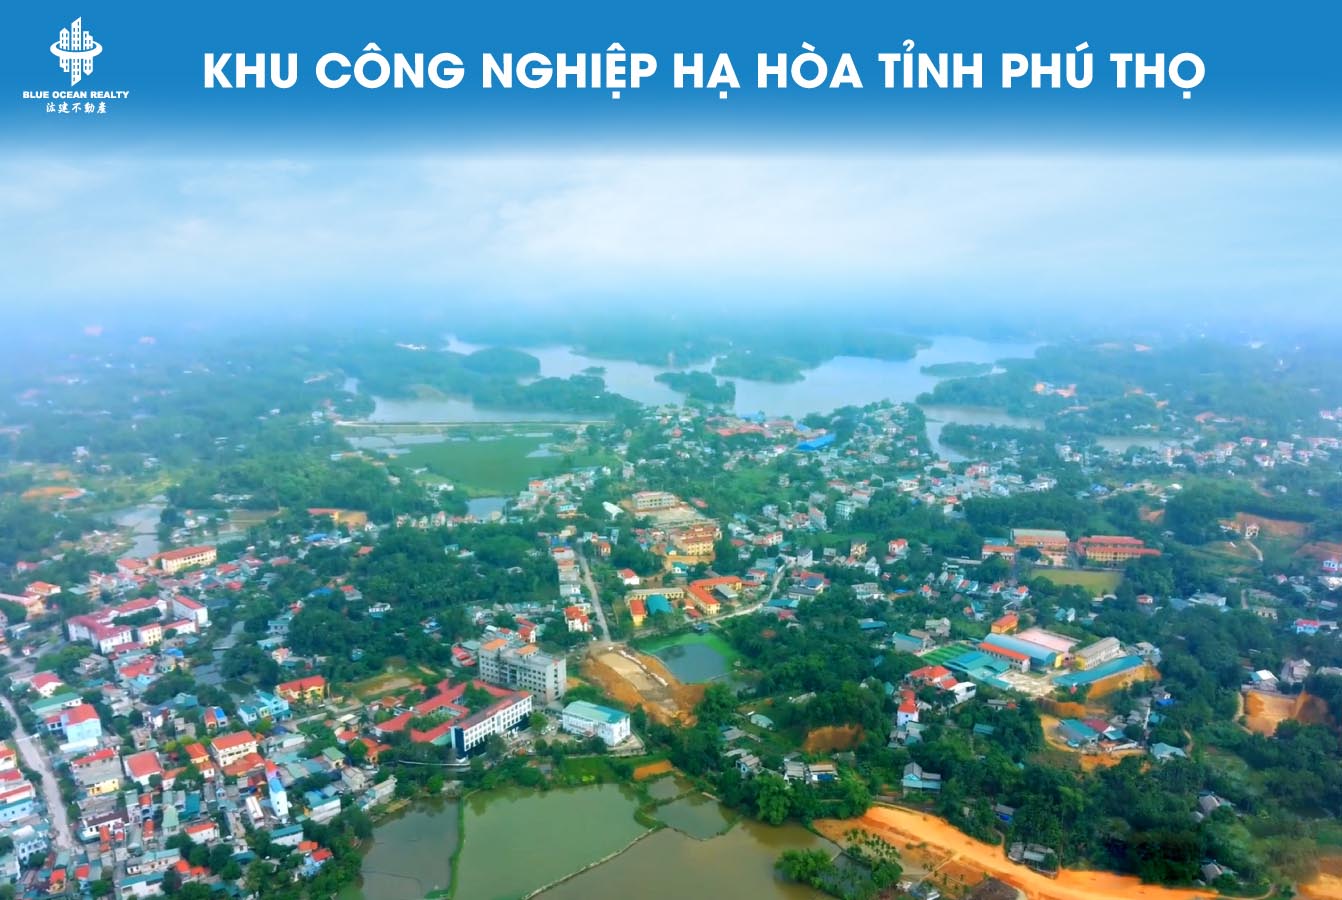 Khu công nghiệp (KCN) Hạ Hòa tỉnh Phú Thọ